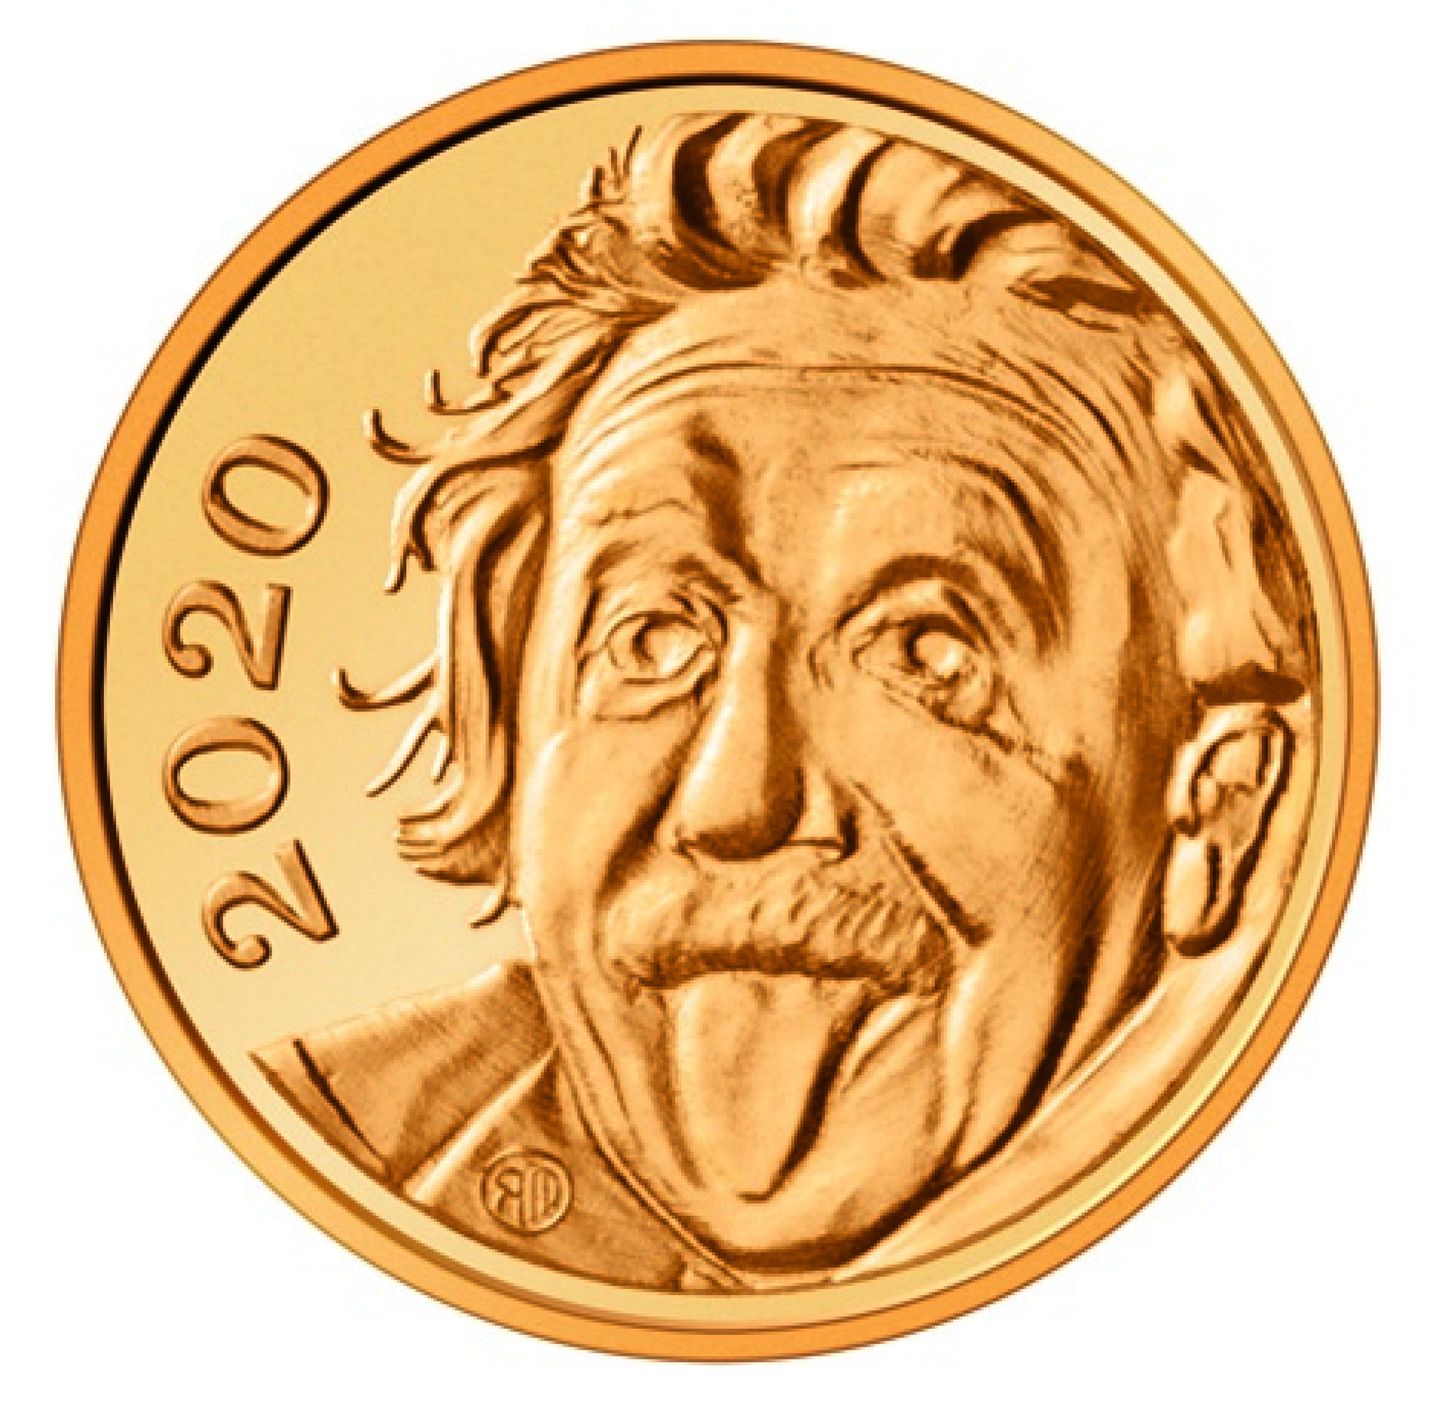 Pasaulē mazākā zelta monēta ar fiziķi Albertu Einšteinu